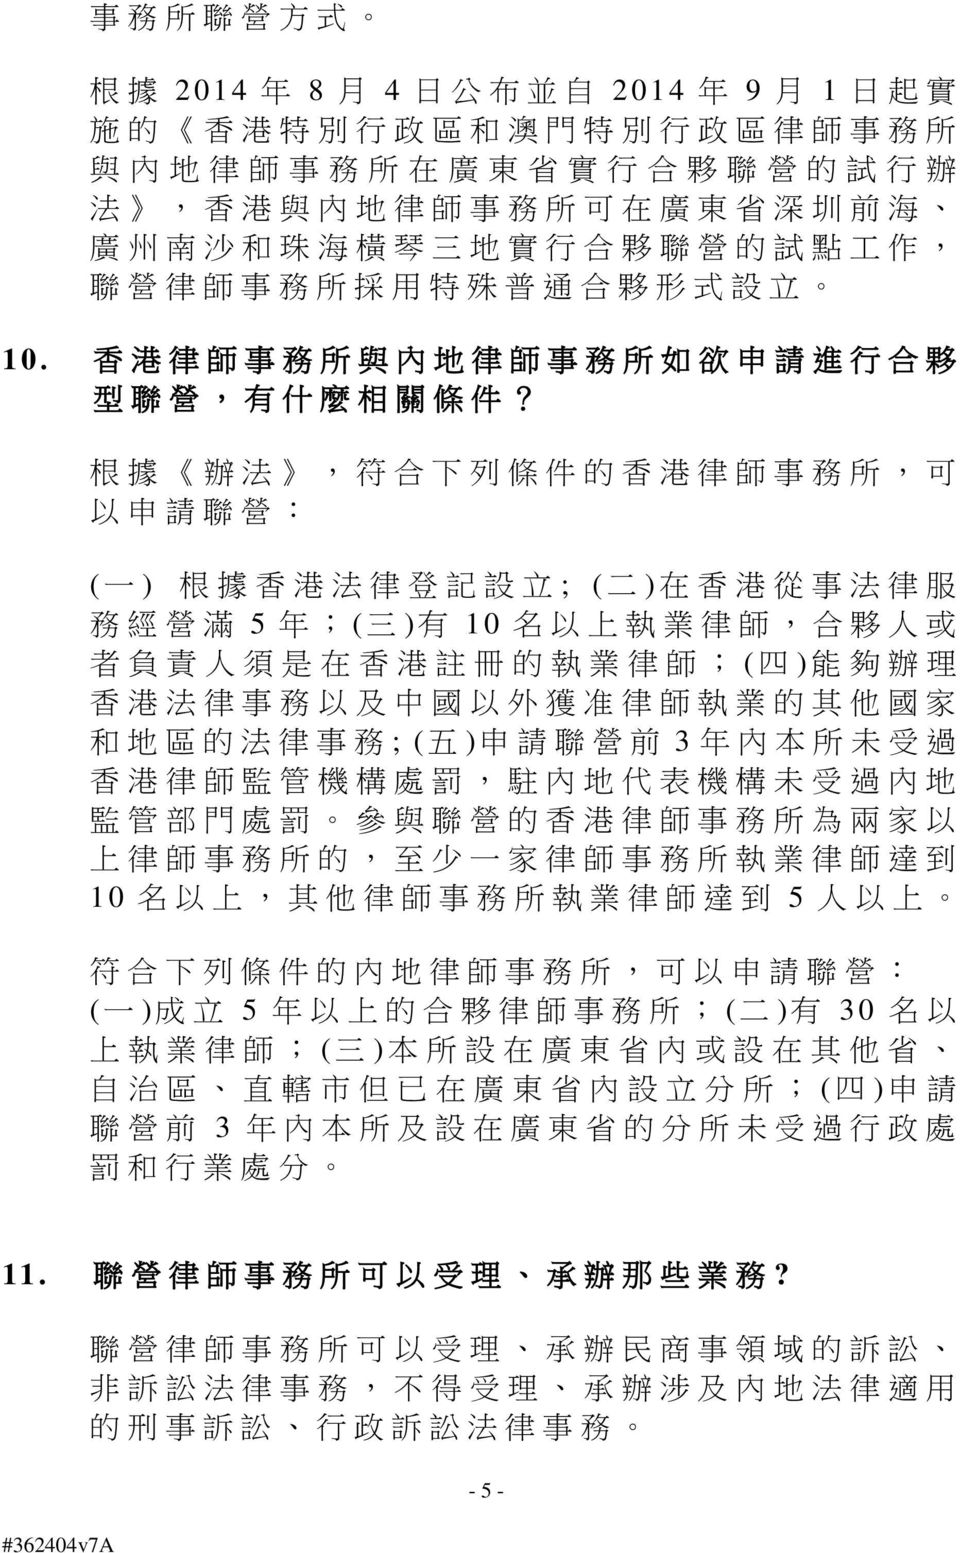 根 據 辦 法, 符 合 下 列 條 件 的 香 港 律 師 事 務 所, 可 以 申 請 聯 營 : ( 一 ) 根 據 香 港 法 律 登 記 設 立 ; ( 二 ) 在 香 港 從 事 法 律 服 務 經 營 滿 5 年 ;( 三 ) 有 10 名 以 上 執 業 律 師, 合 夥 人 或 者 負 責 人 須 是 在 香 港 註 冊 的 執 業 律 師 ; ( 四 ) 能 夠 辦 理 香